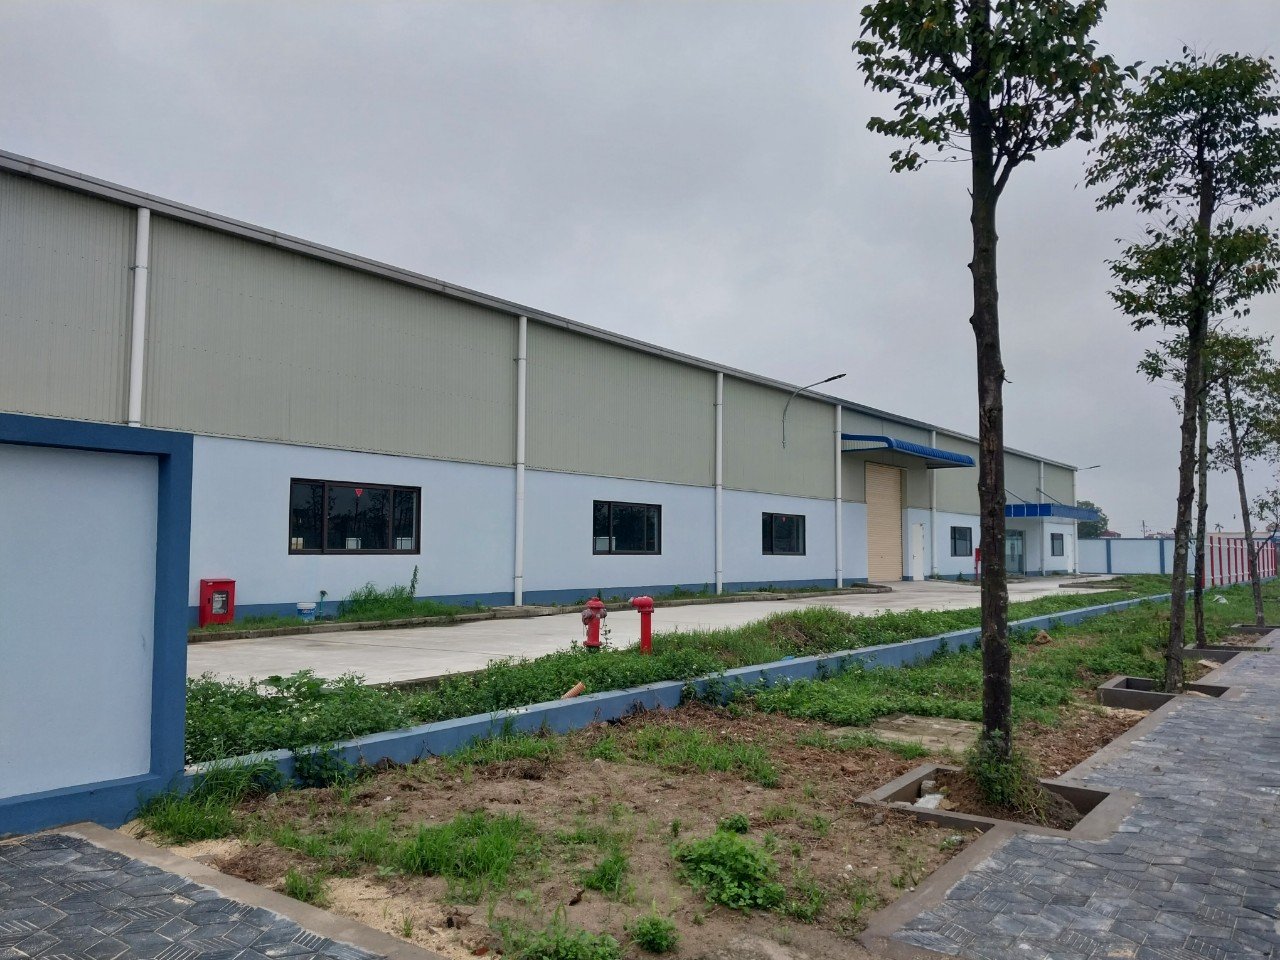 Bán nhà máy 1.7ha trong khu công nghiệp Hưng yên. Mới xây dựng xong, xưởng tiêu chuẩn quốc tế